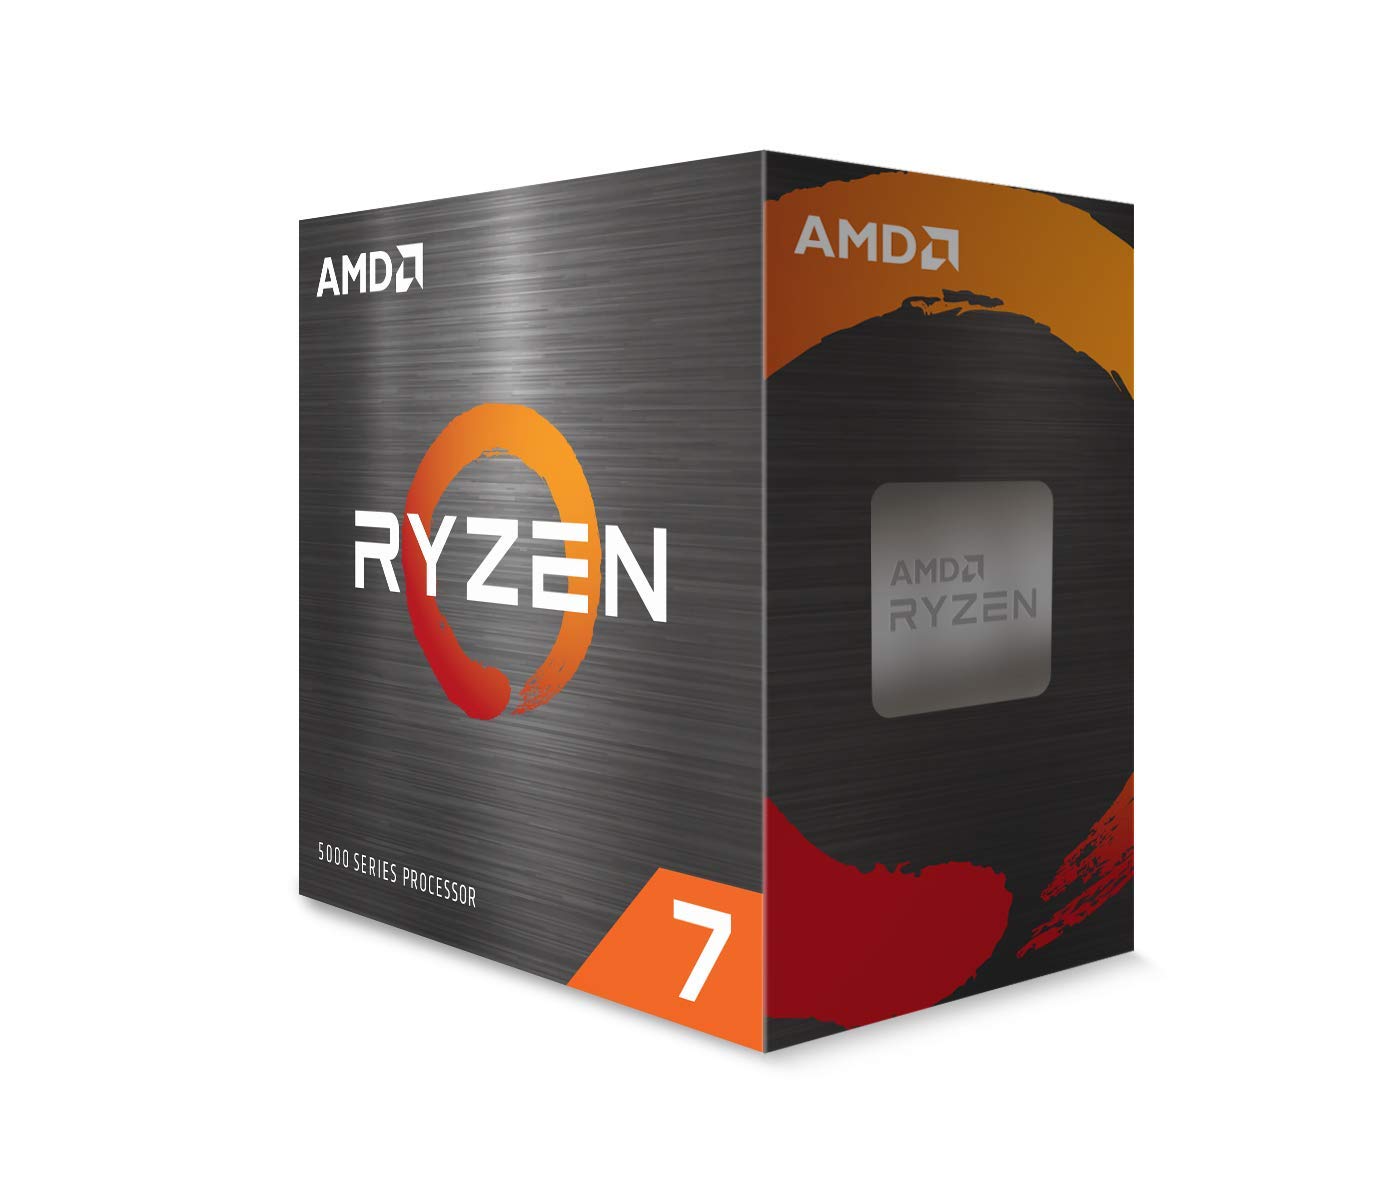 AMD Ryzen 7 5800X 8-core, 16-Thread Unlocked Desktop Processor $239